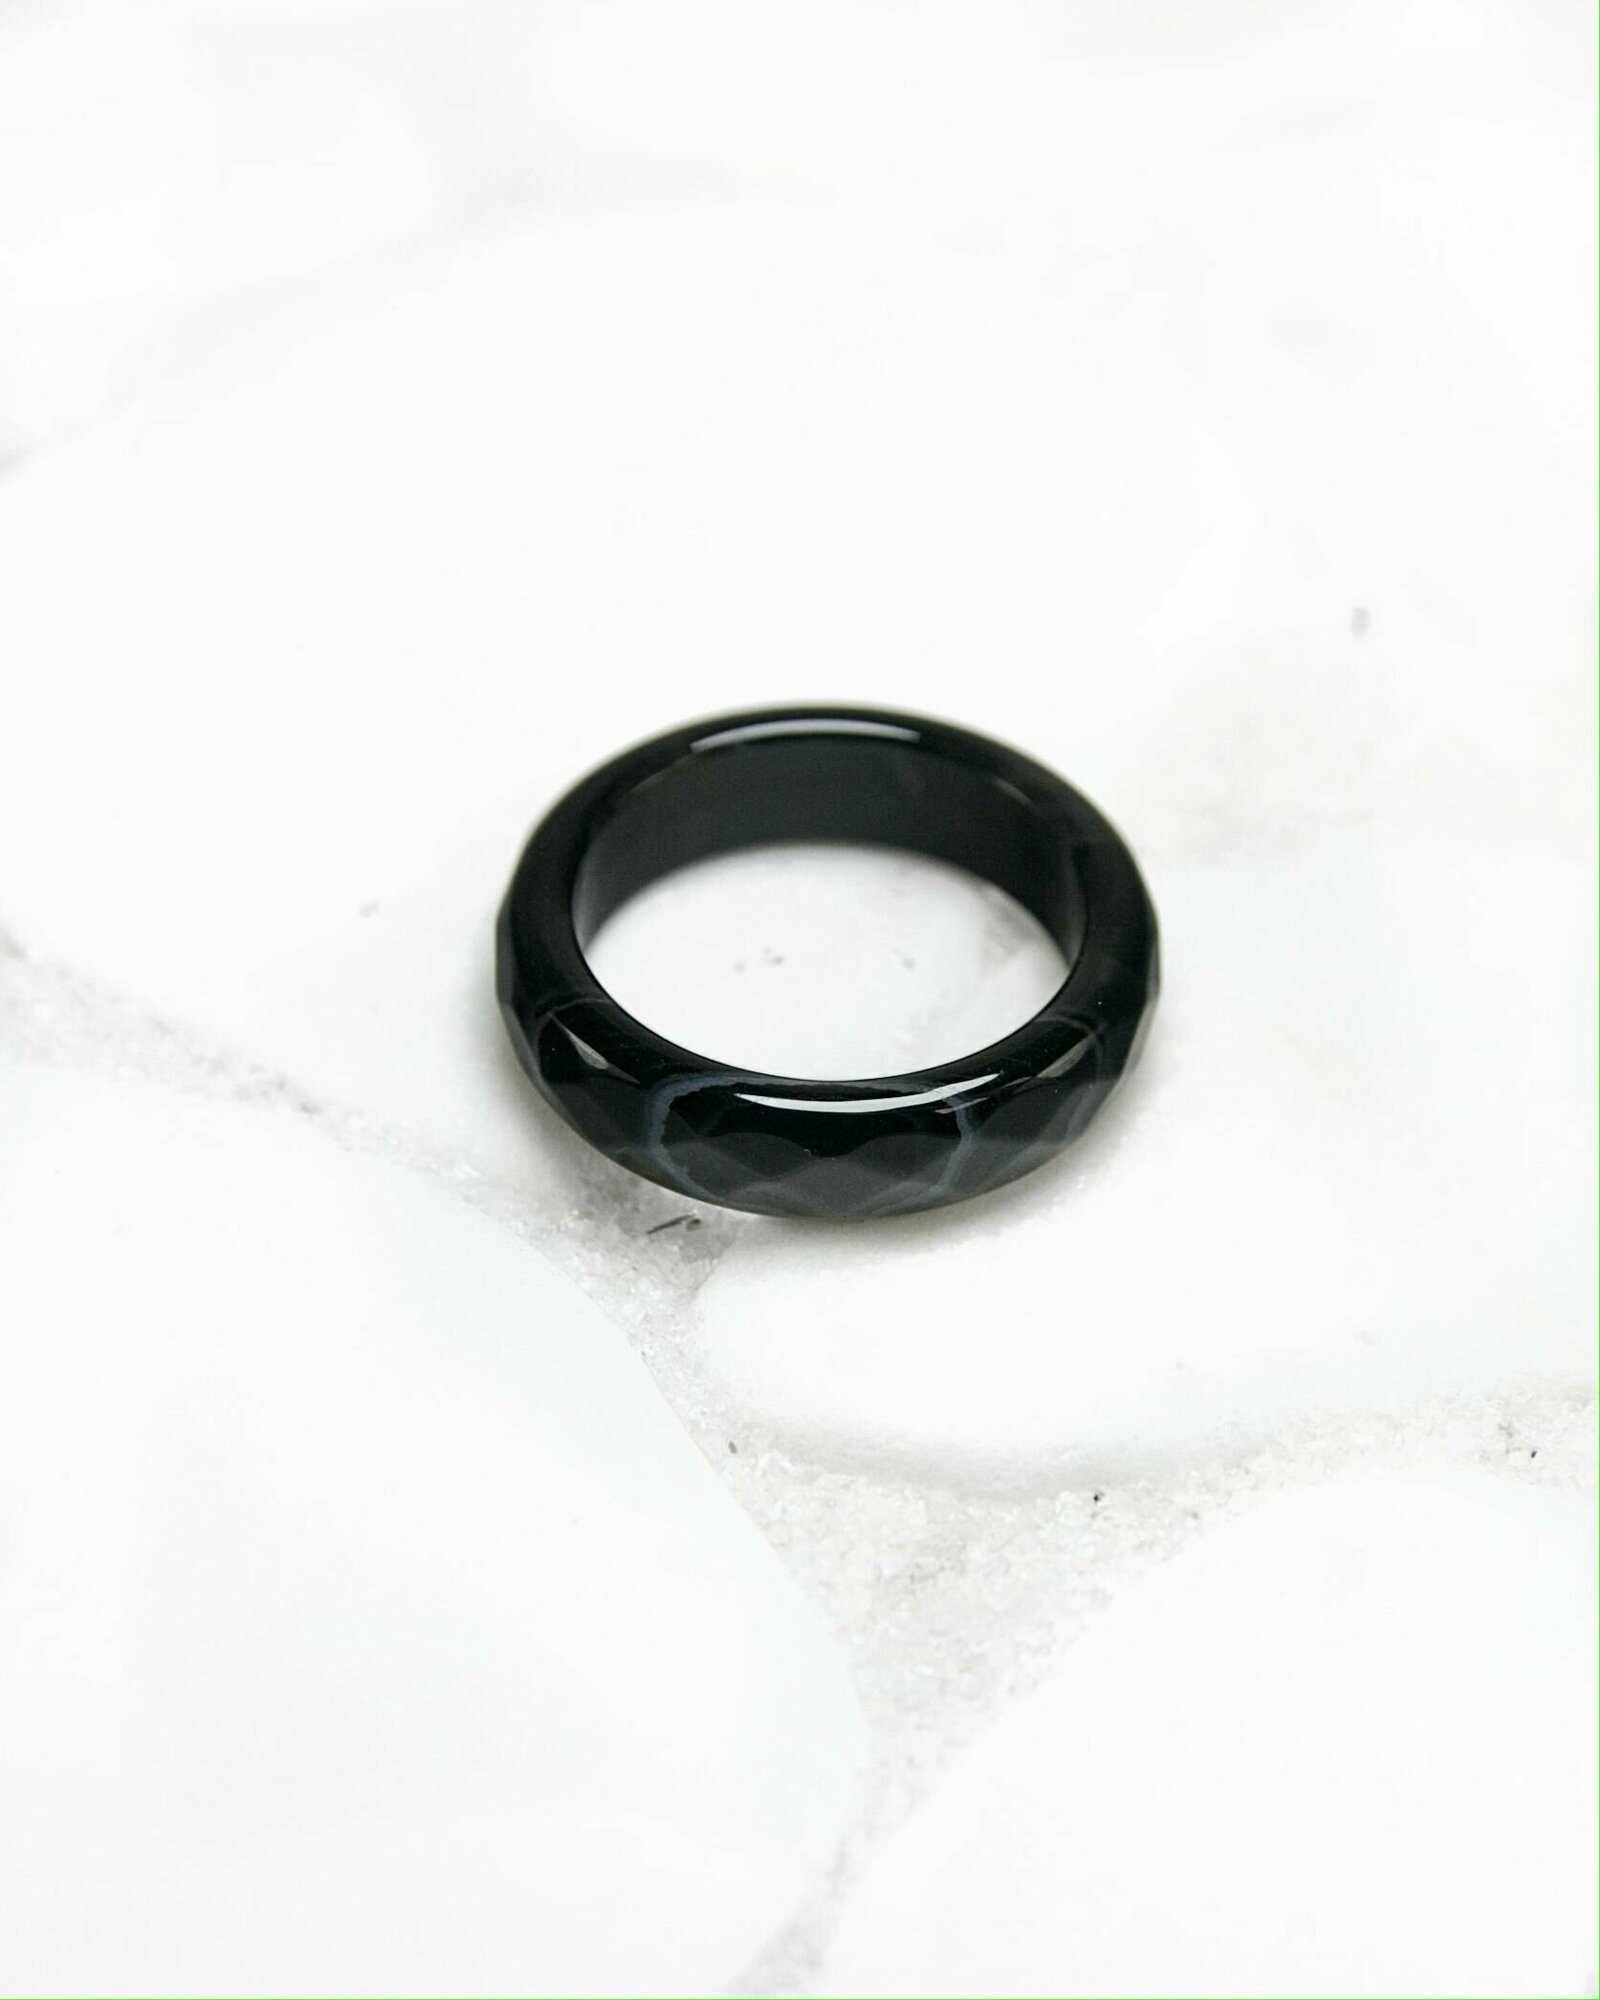 Кольцо-кулон Grow'N Up Кольцо из натурального камня Черный агат с прожилками, граненое, для душевного равновесия, размер 17-18, агат